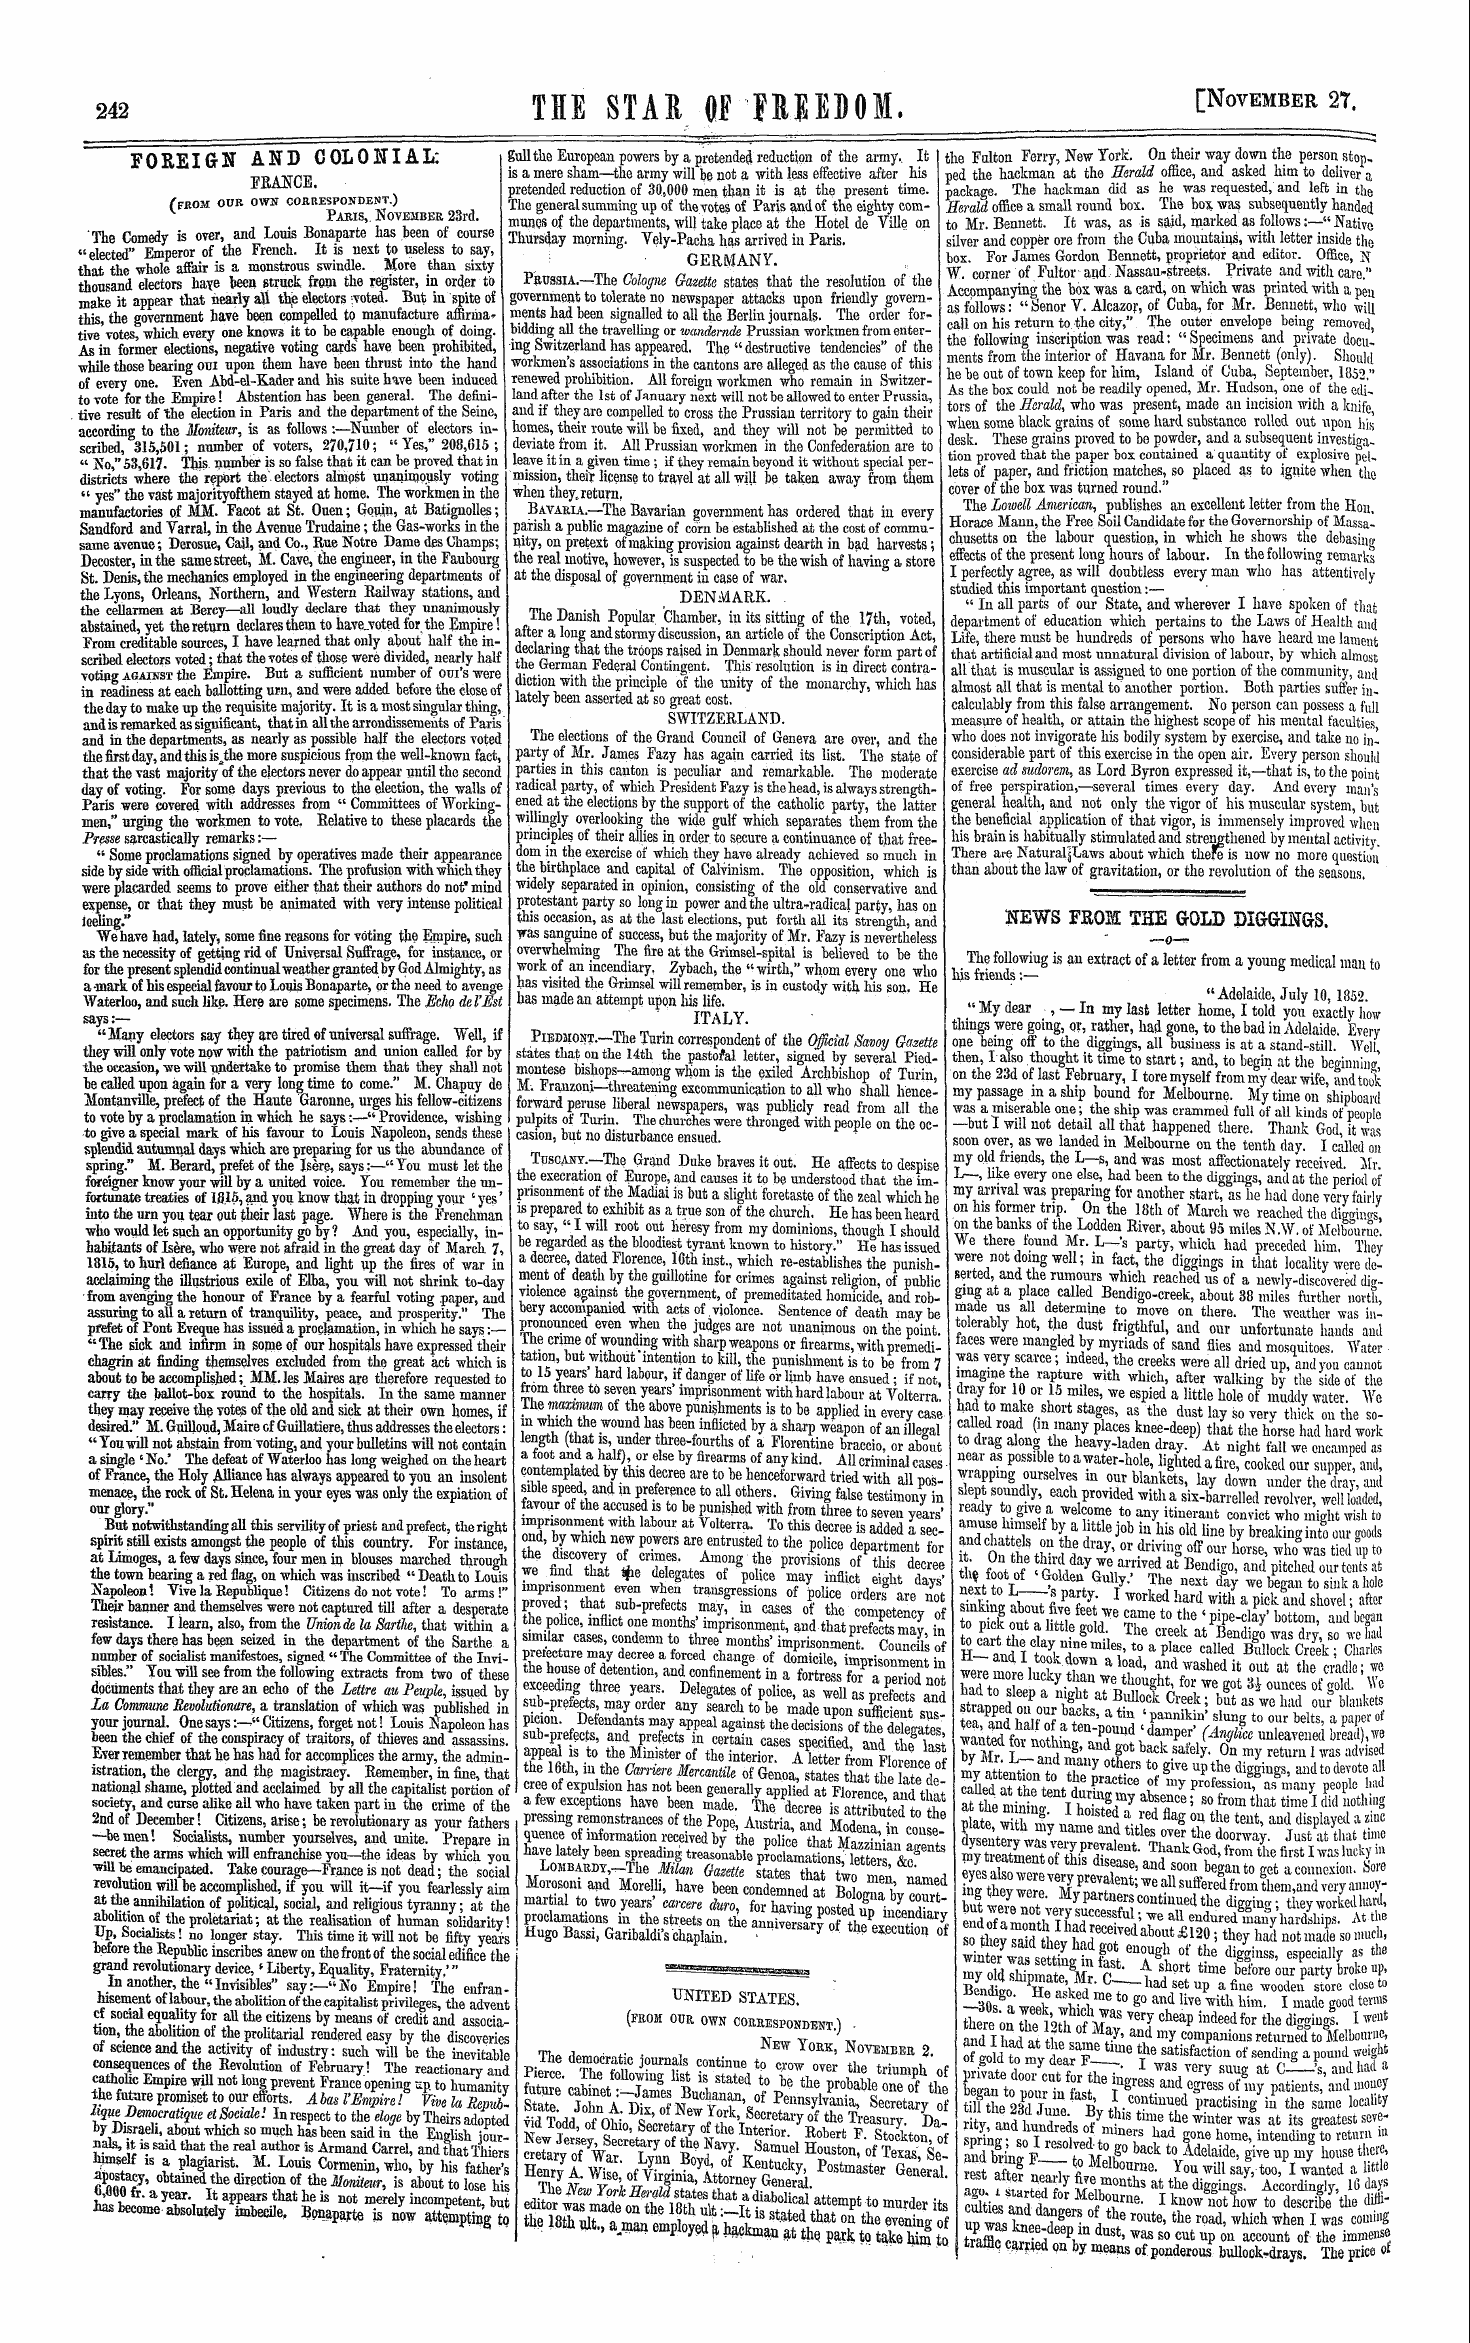 Northern Star (1837-1852): jS F Y, 1st edition - Ar00206